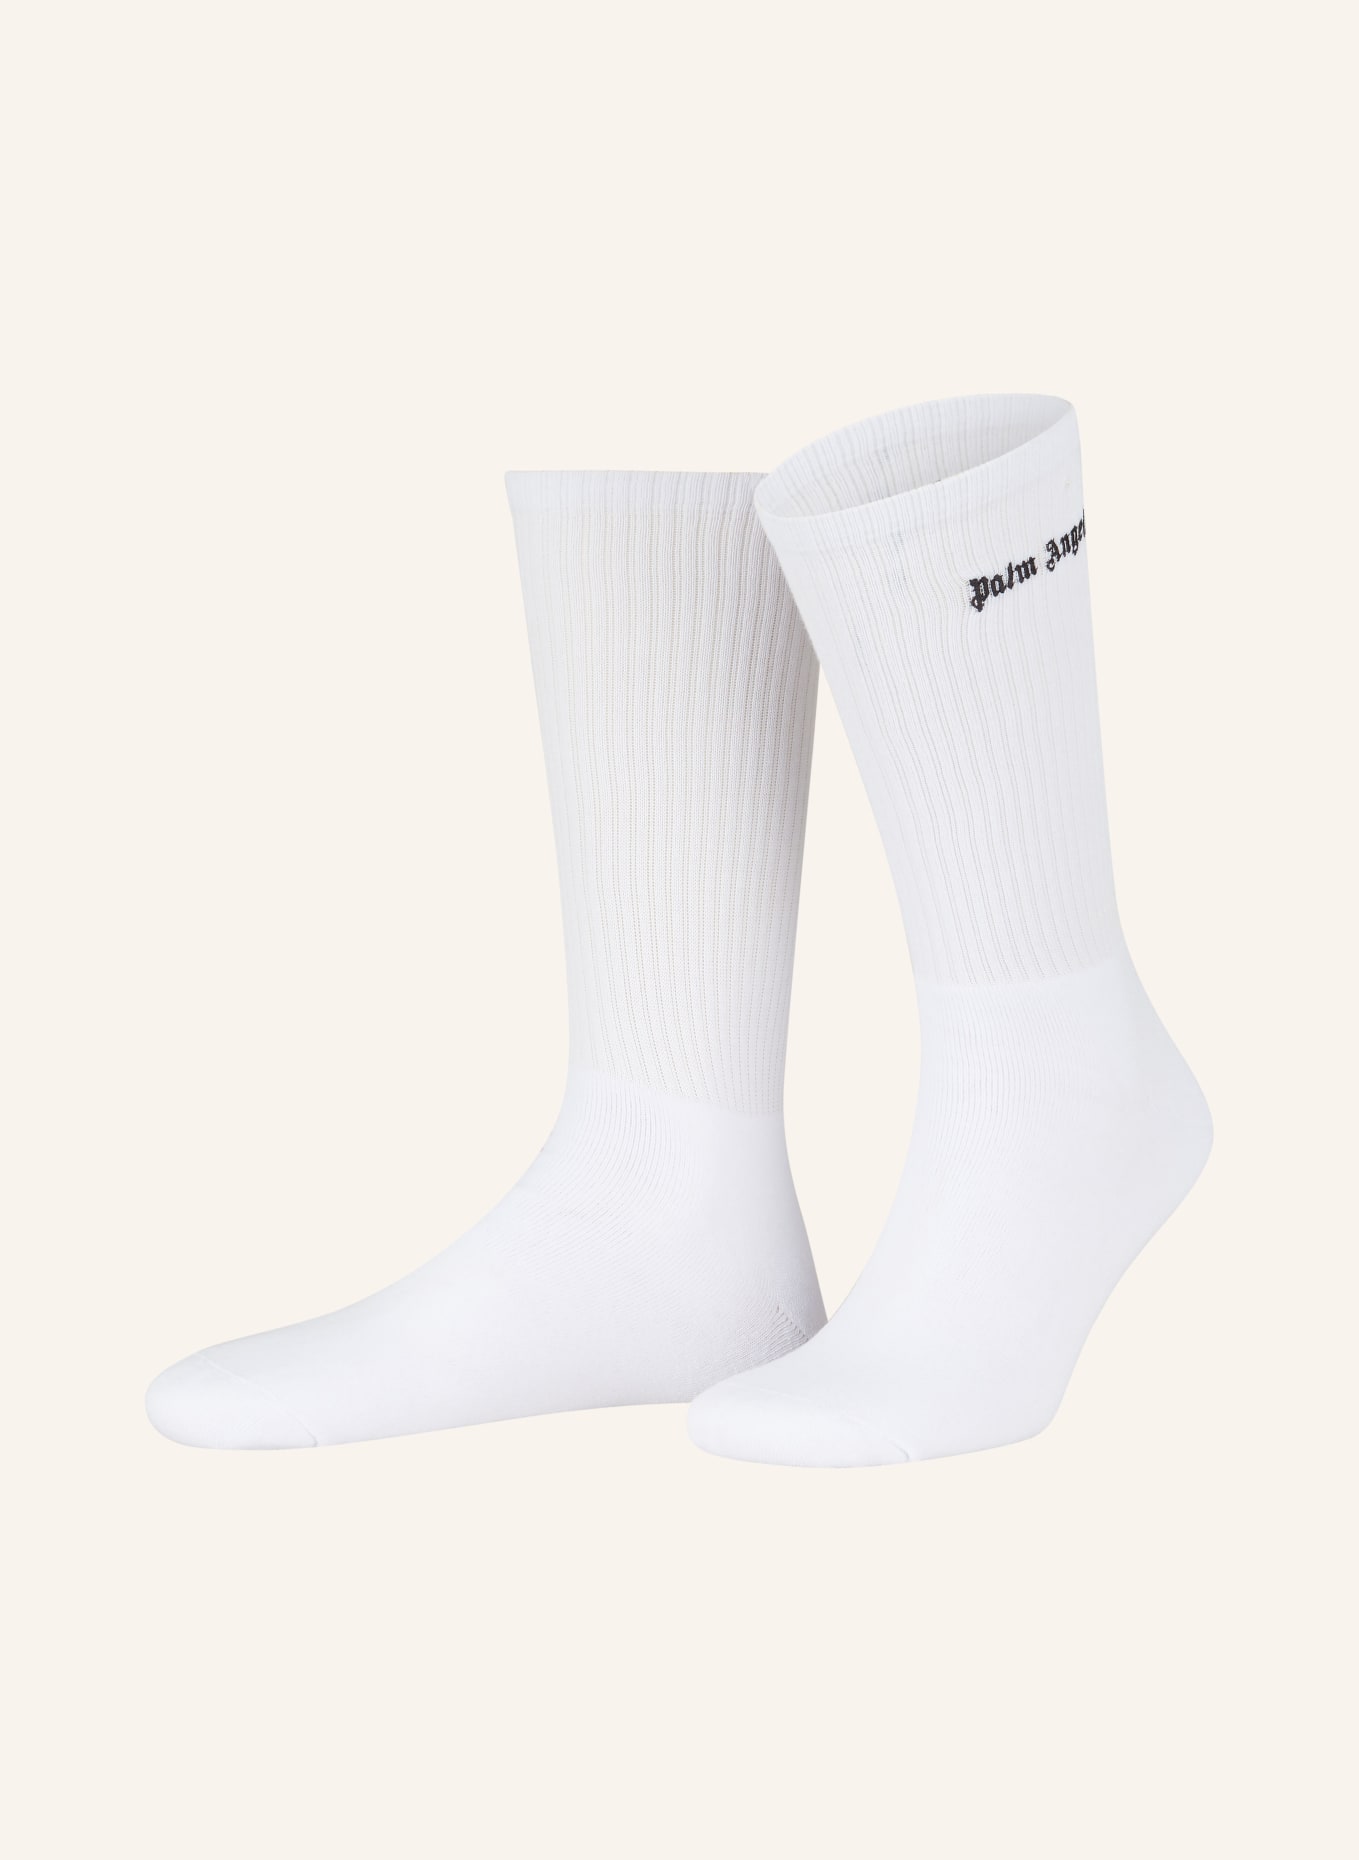 Palm Angels Socks, Color: 0110  white black (Image 1)